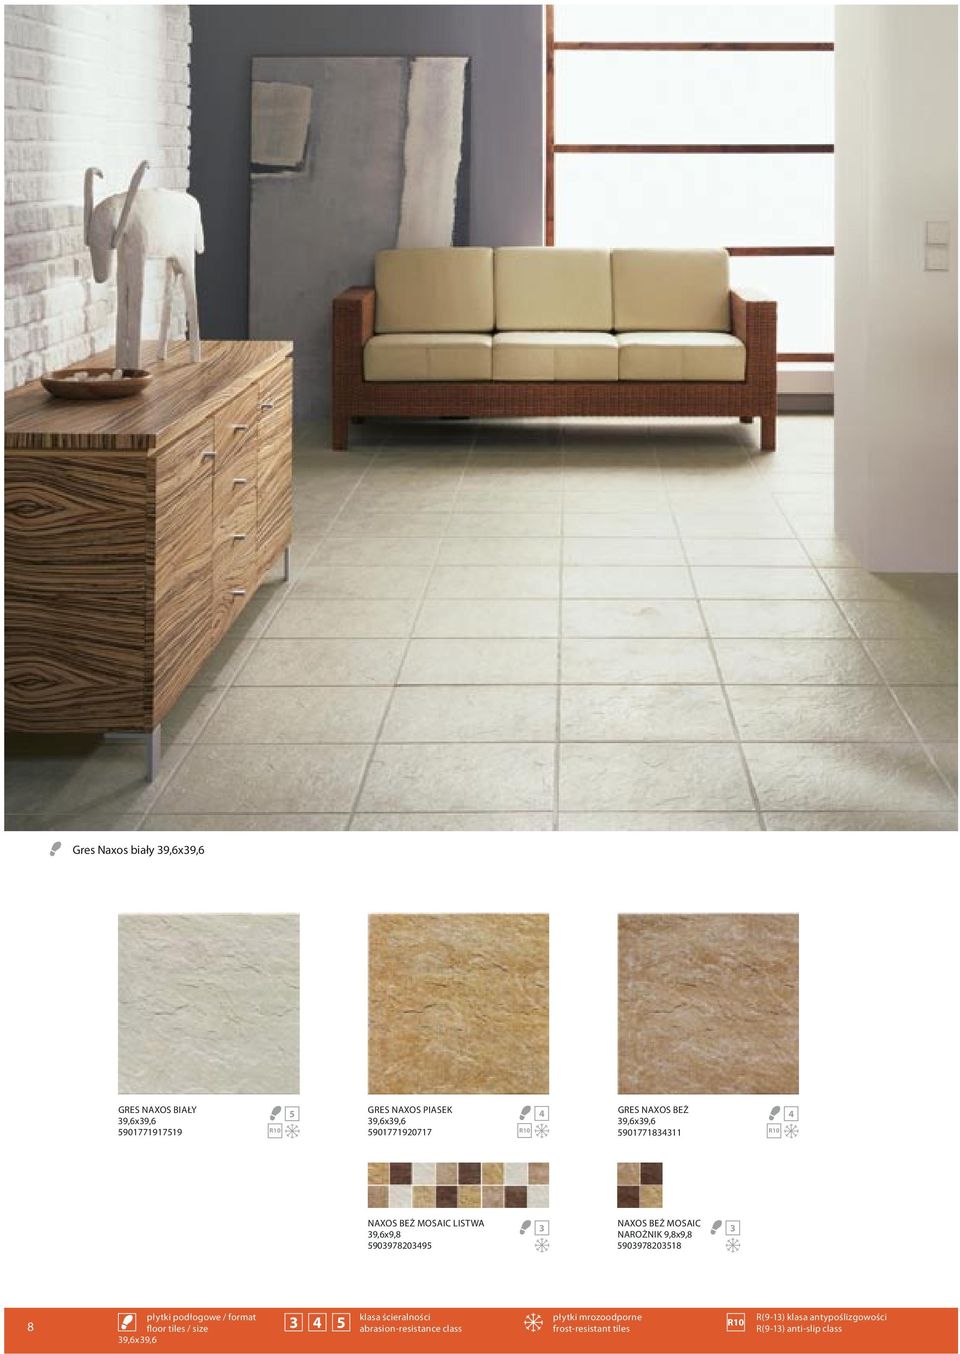 9,8x9,8 59097820518 8 płytki podłogowe / format klasa ścieralności płytki mrozoodporne floor tiles / size 5